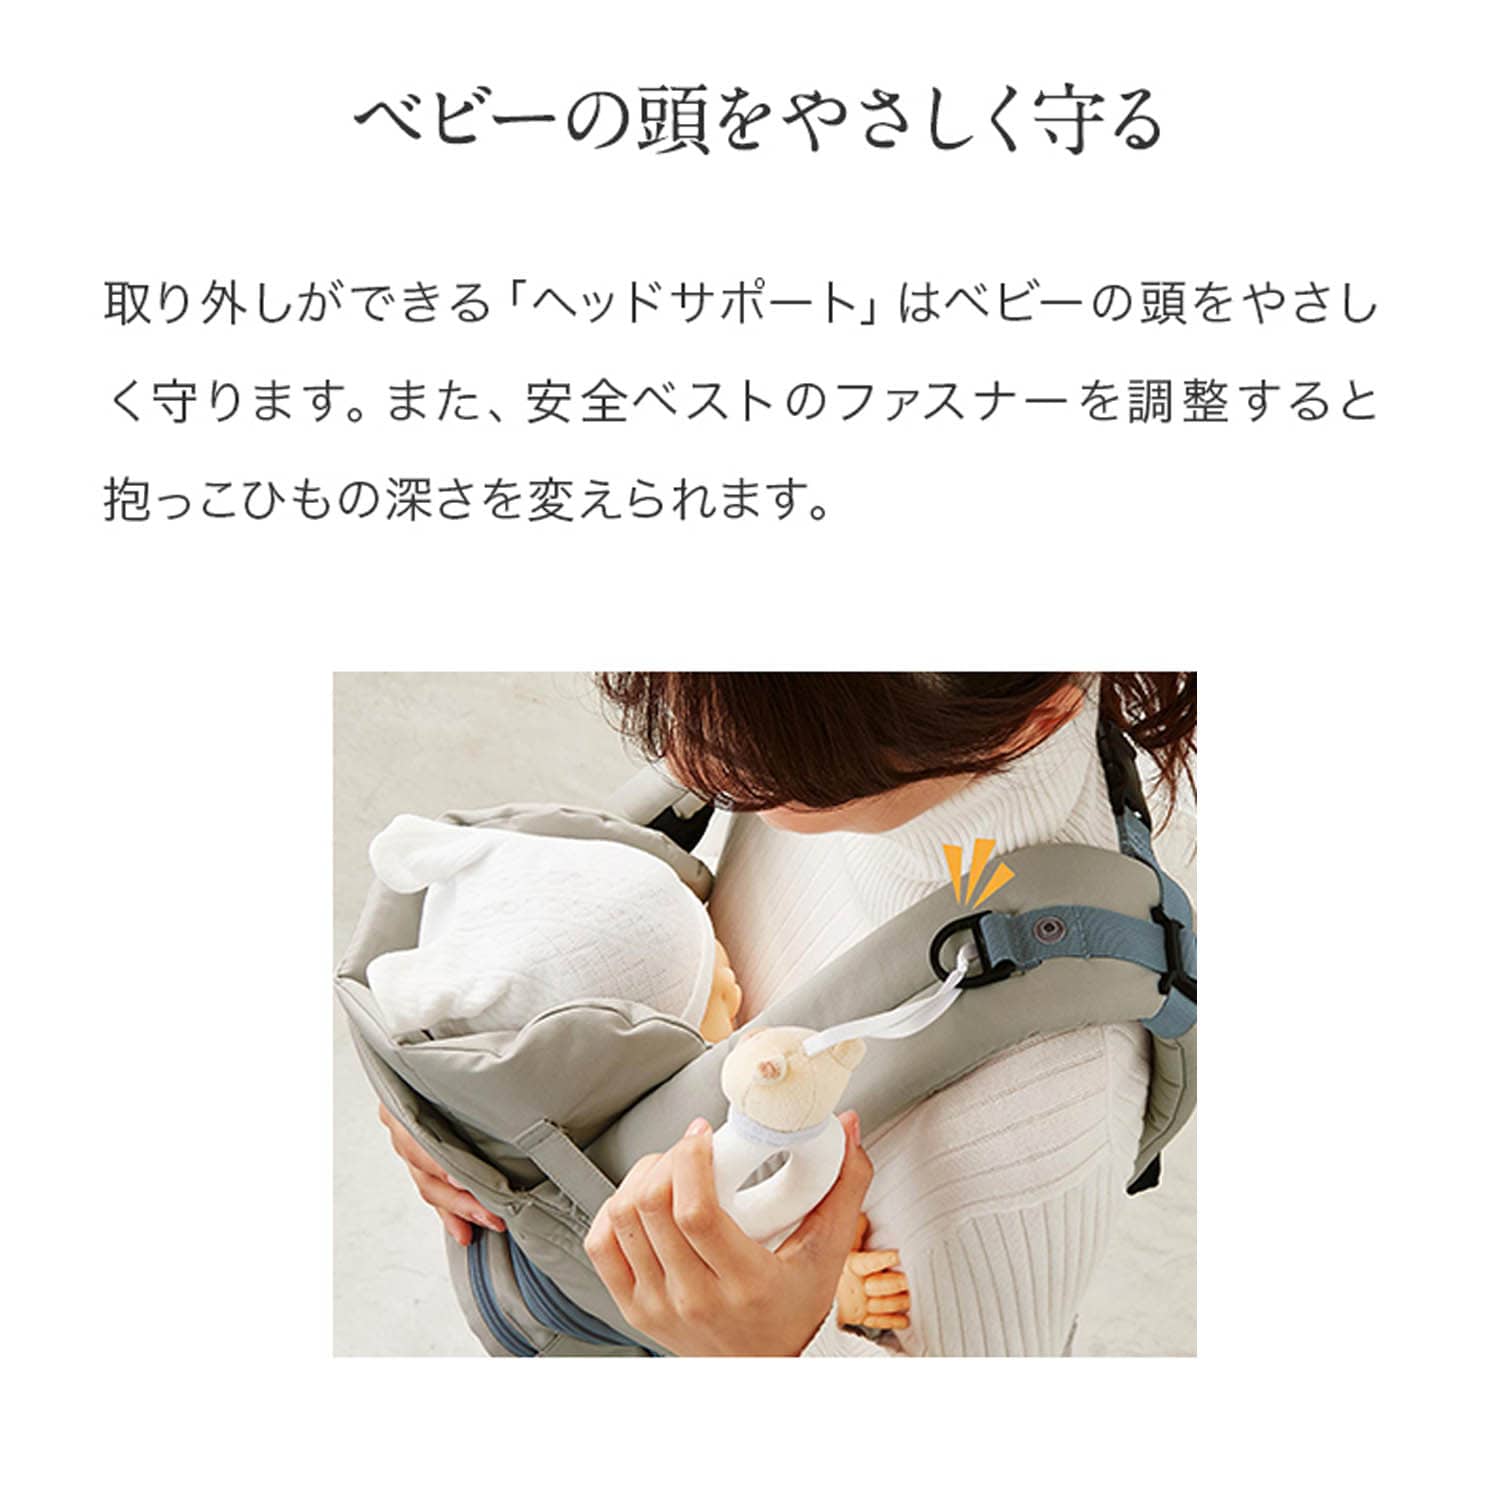 ベルメゾン ベビーの体型を考えて設計された新生児から使える抱っこ